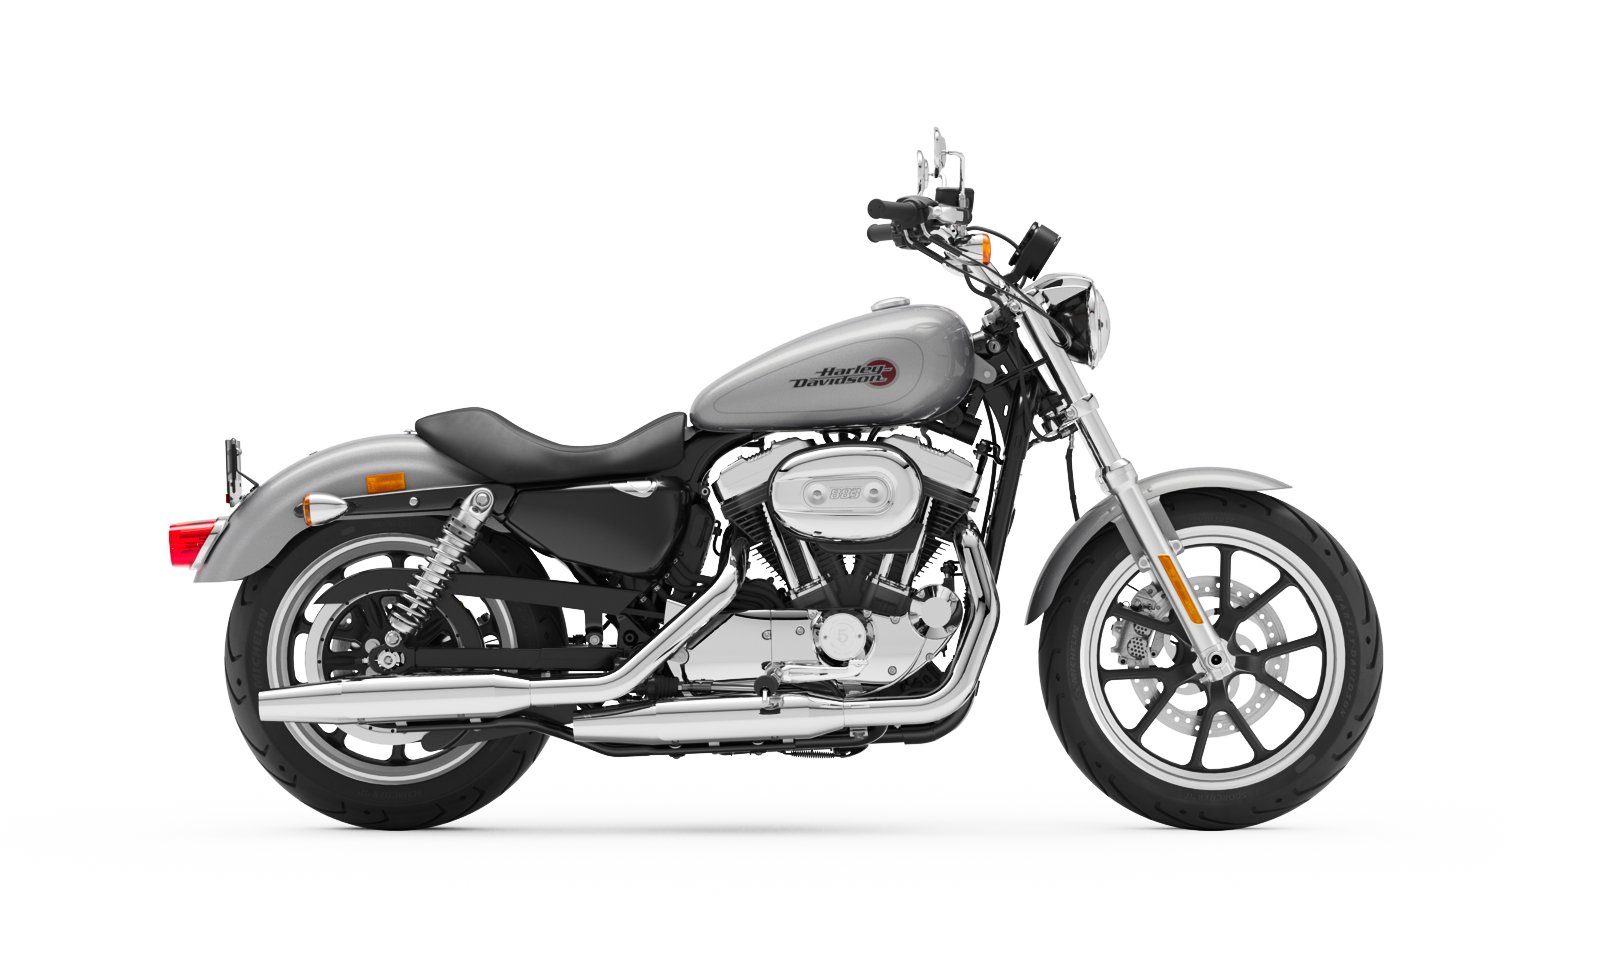 2020 Harley Davidson Superlow Motorcycle Harley Davidson Europe